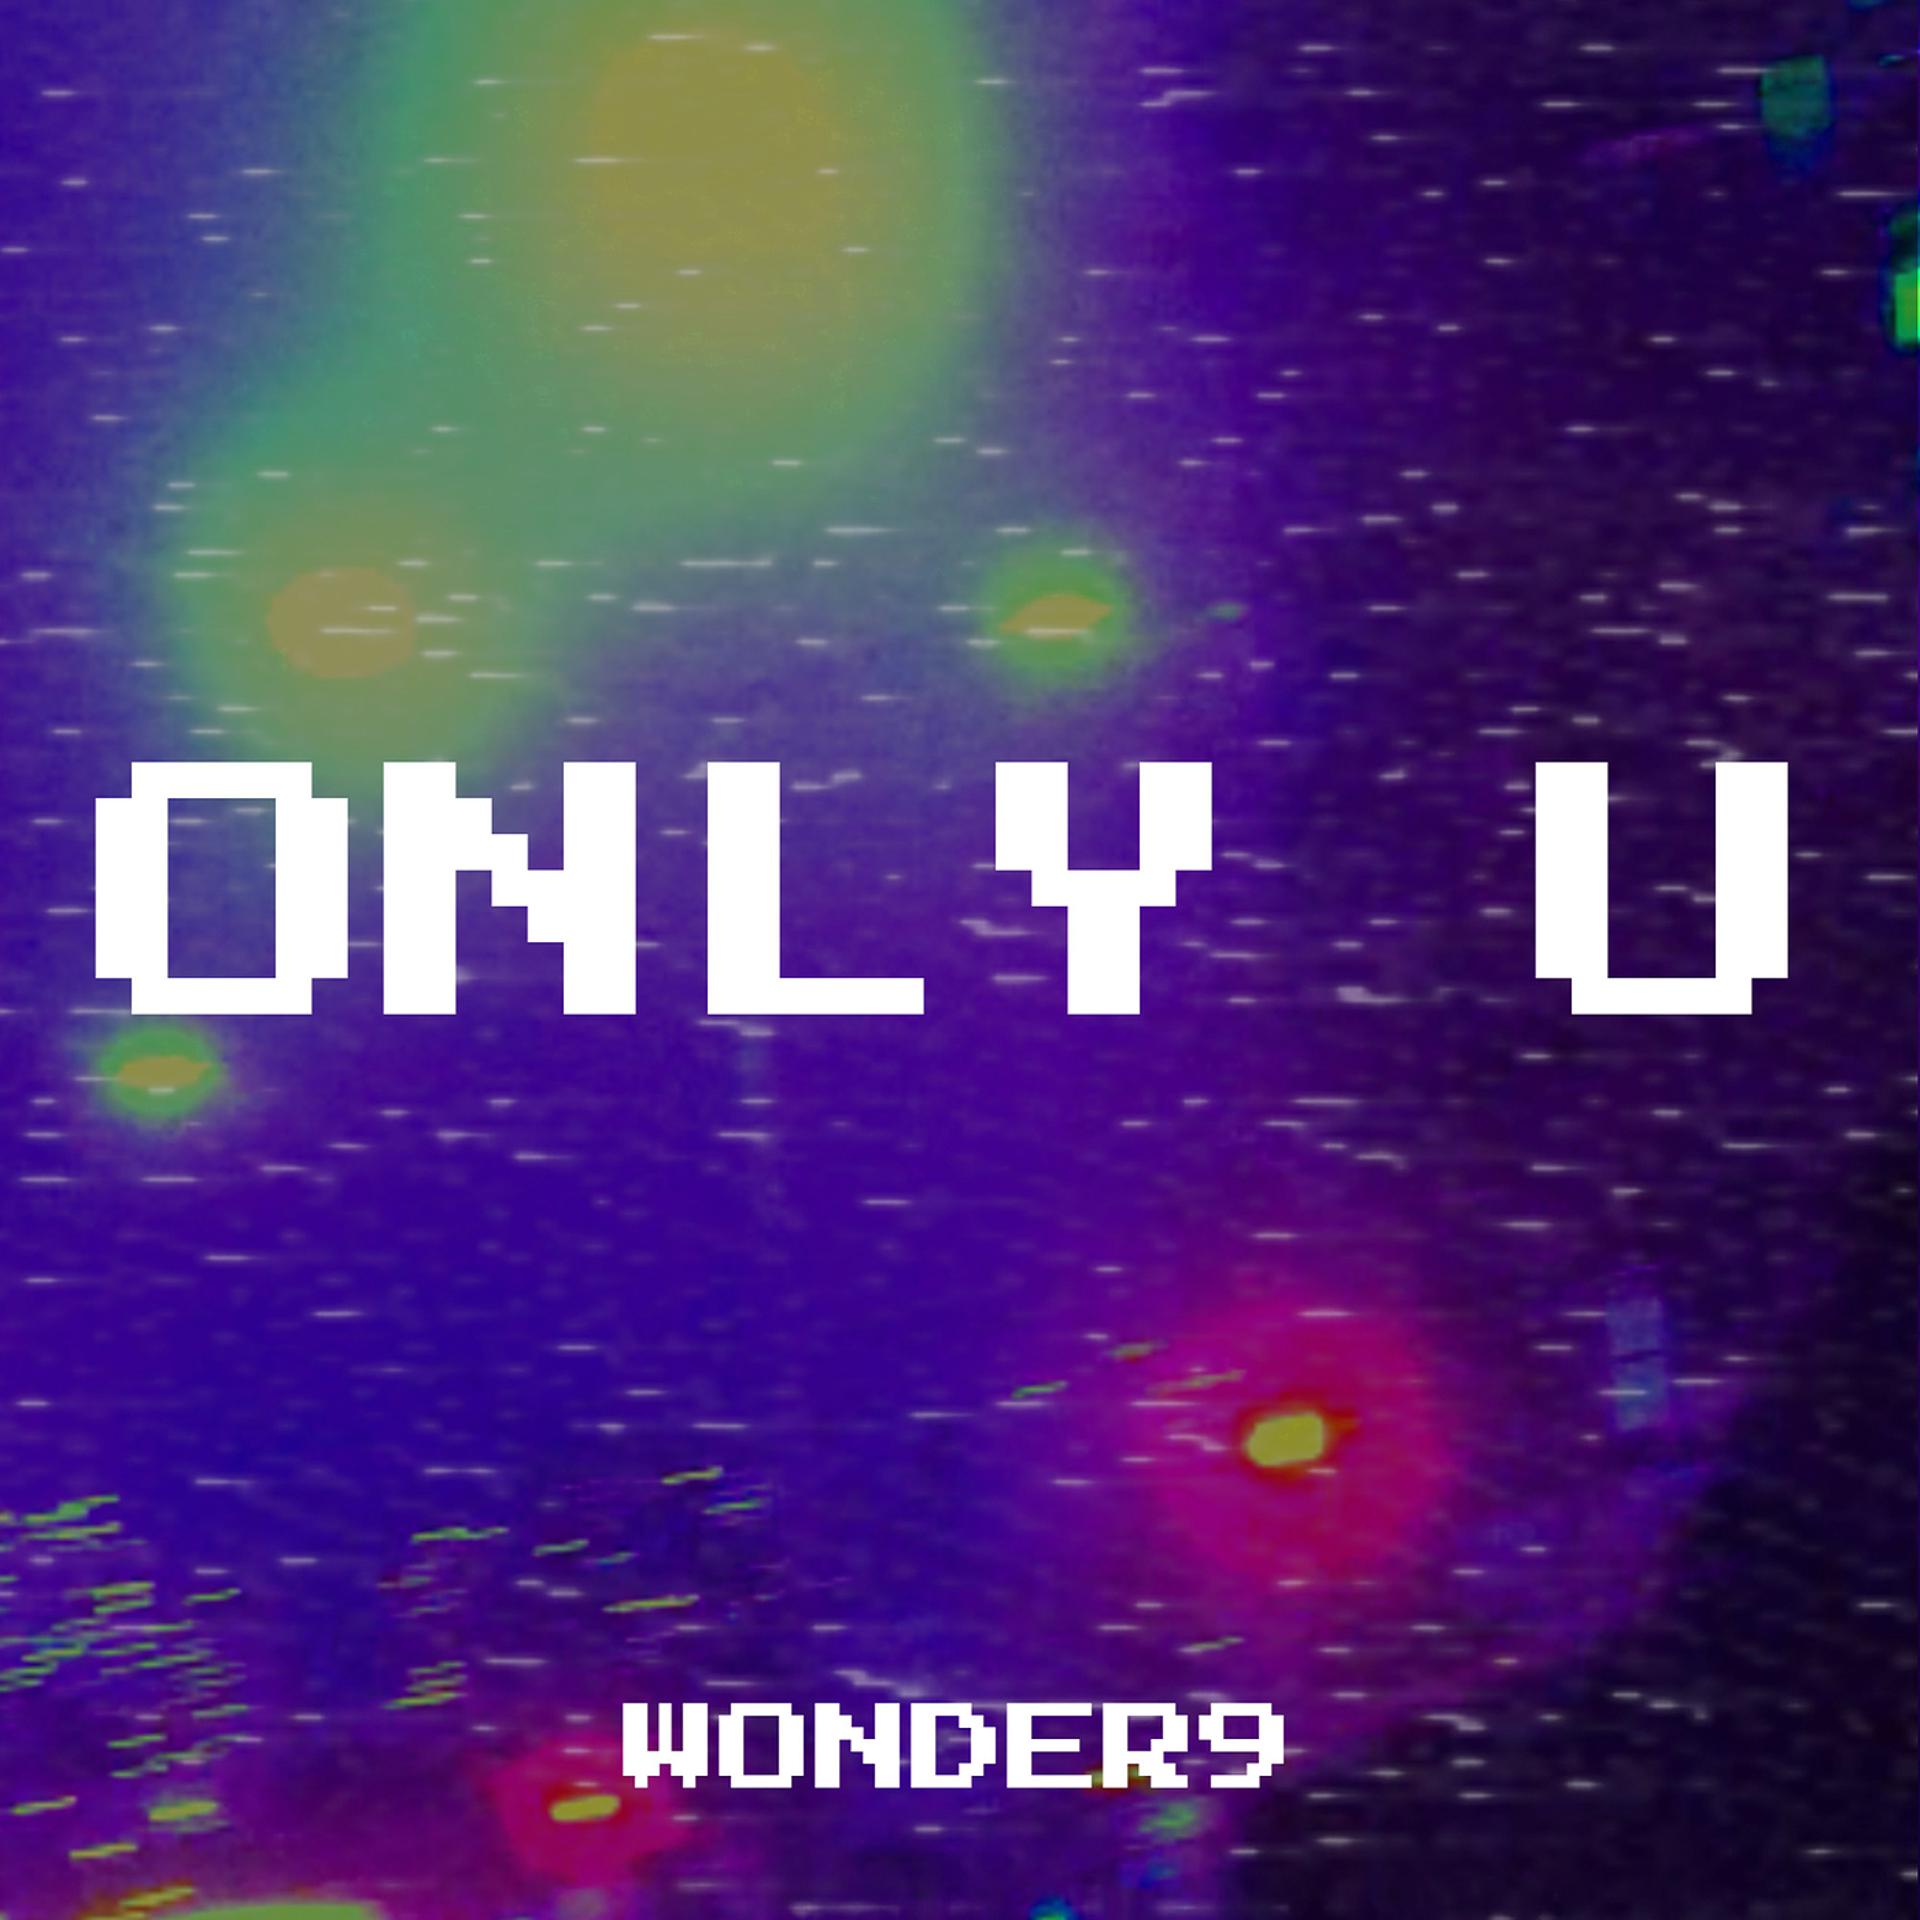 Nine wonder. Wonder or u.